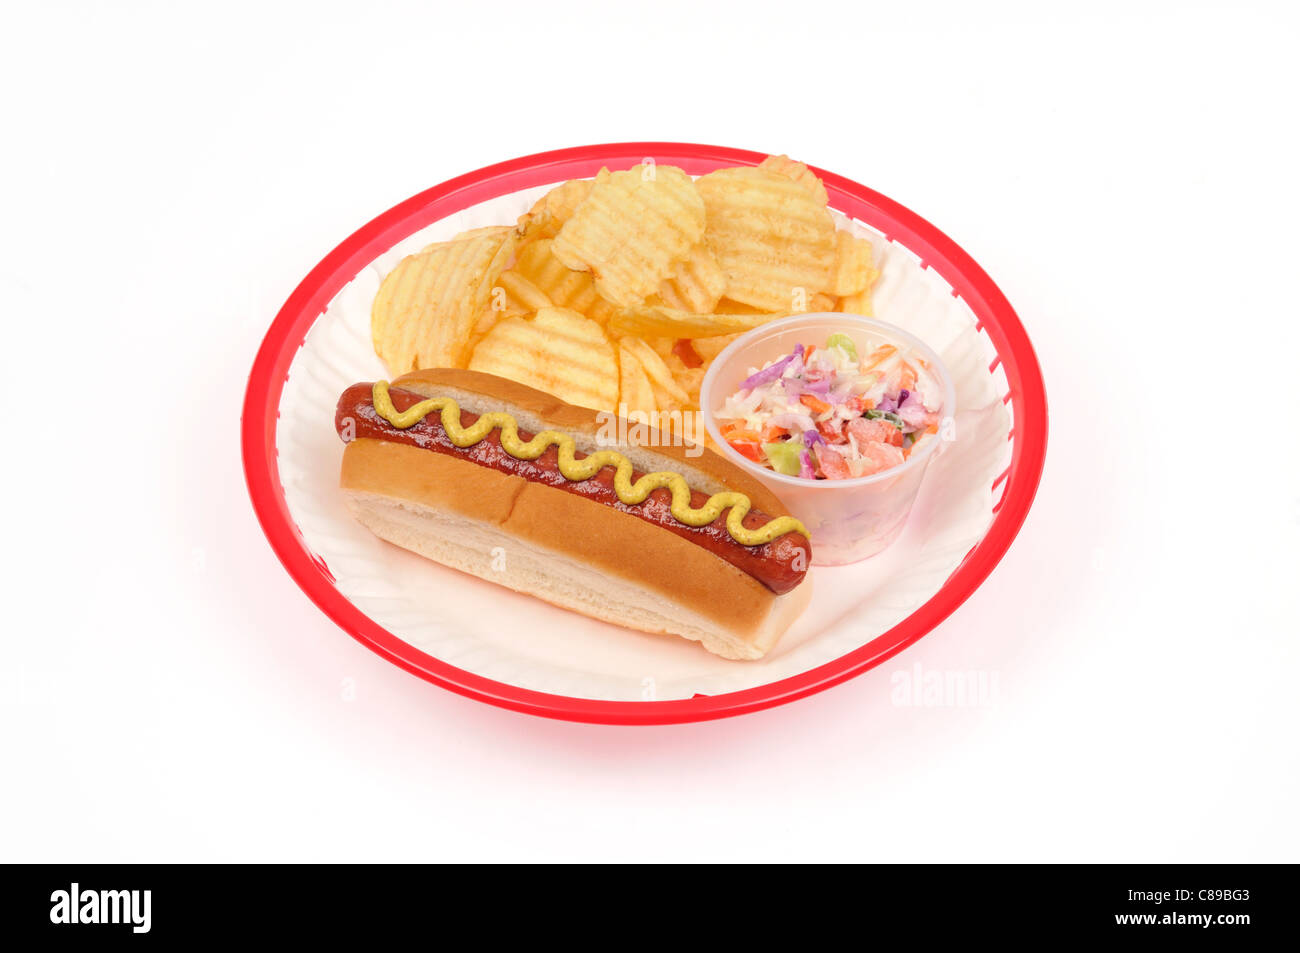 Hotdog con senape, patatine o patate fritte e coleslaw sul libro bianco piastra in plastica rosso cesto su sfondo bianco ritaglio. Foto Stock